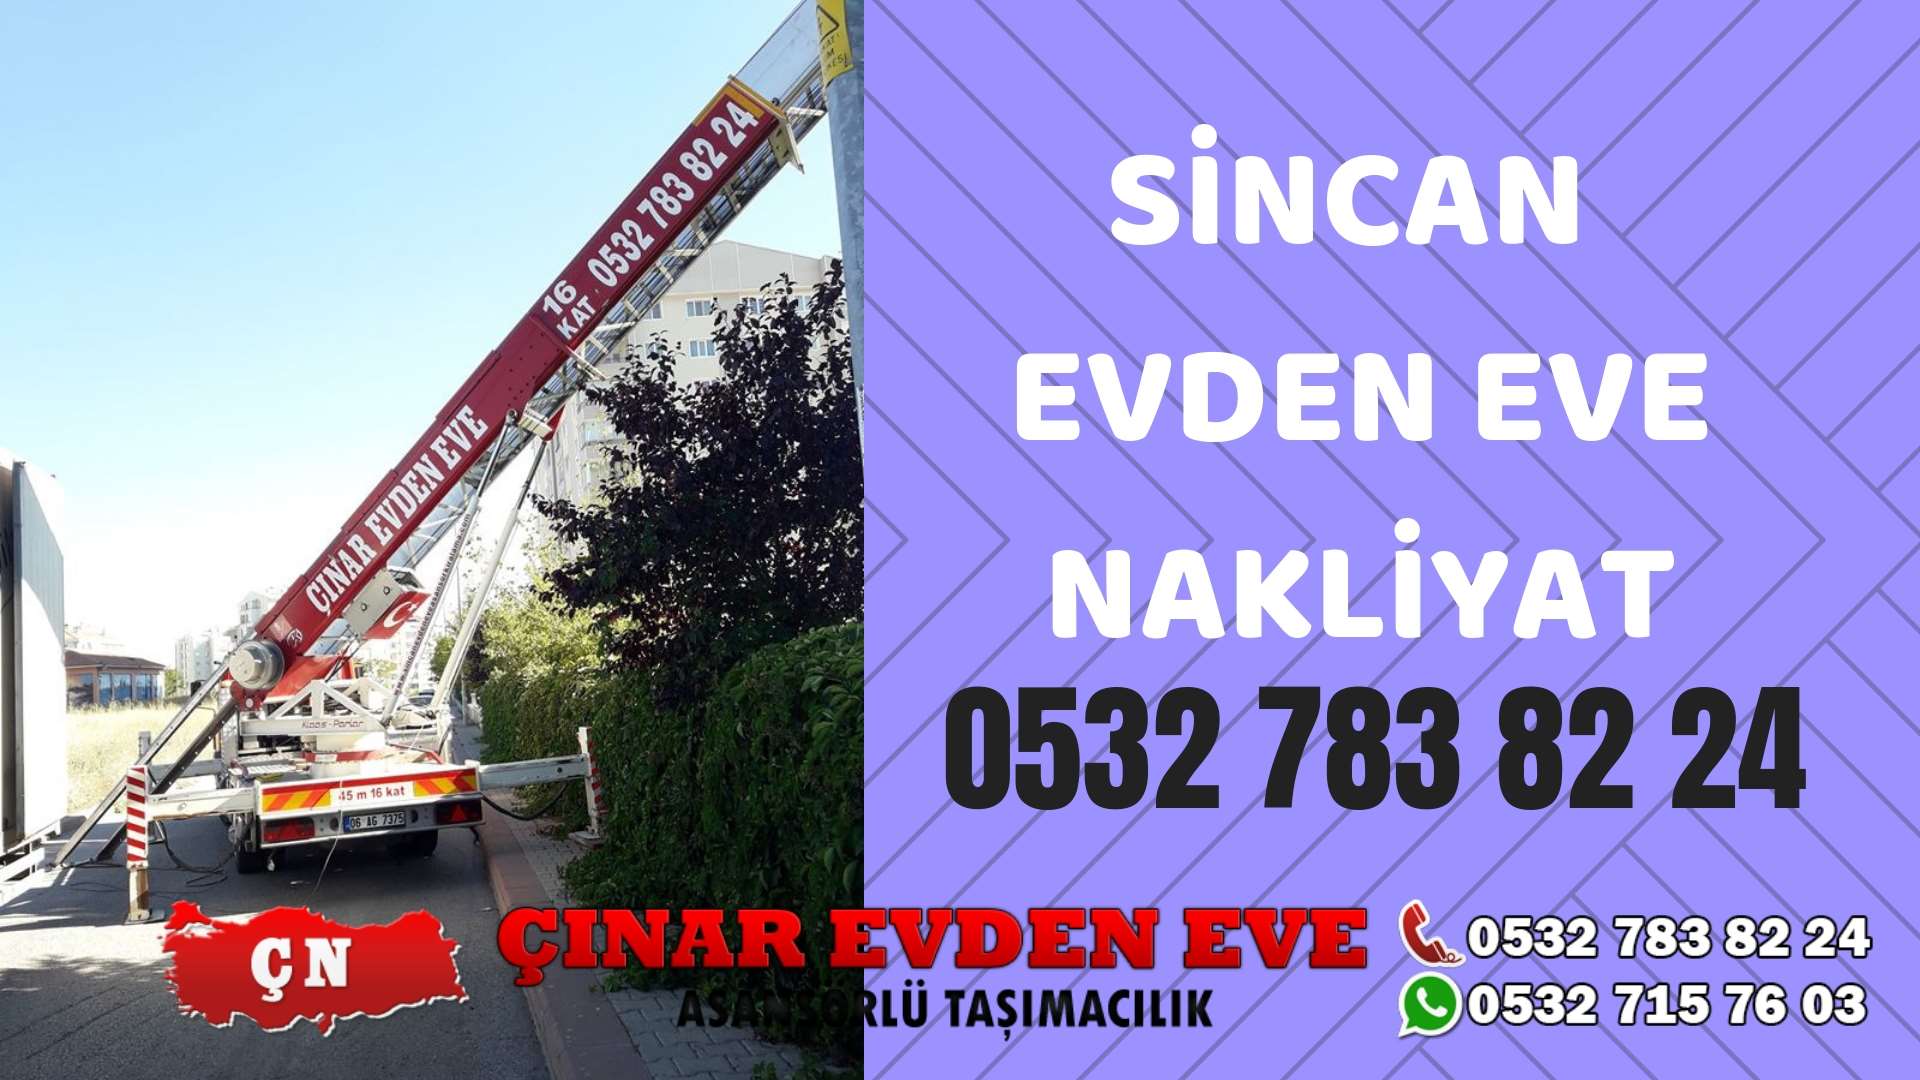 Ankara Ümitköy Evden eve ev taşıma sincan nakliye fiyatları 0532 715 76 03